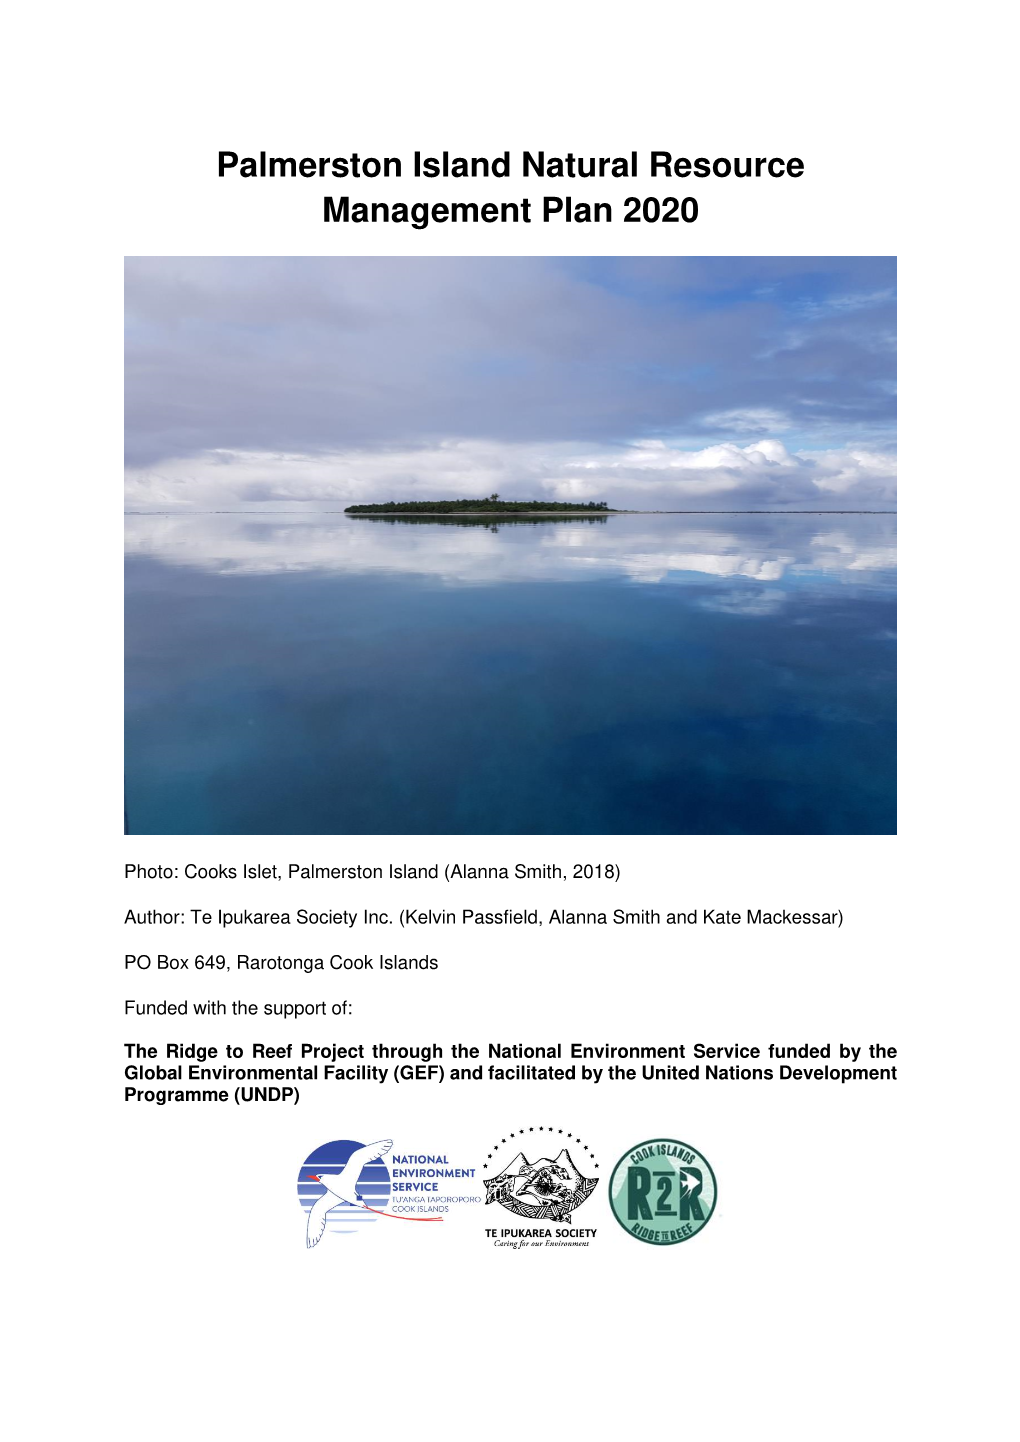 Palmerston Island Natural Resource Management Plan 2020